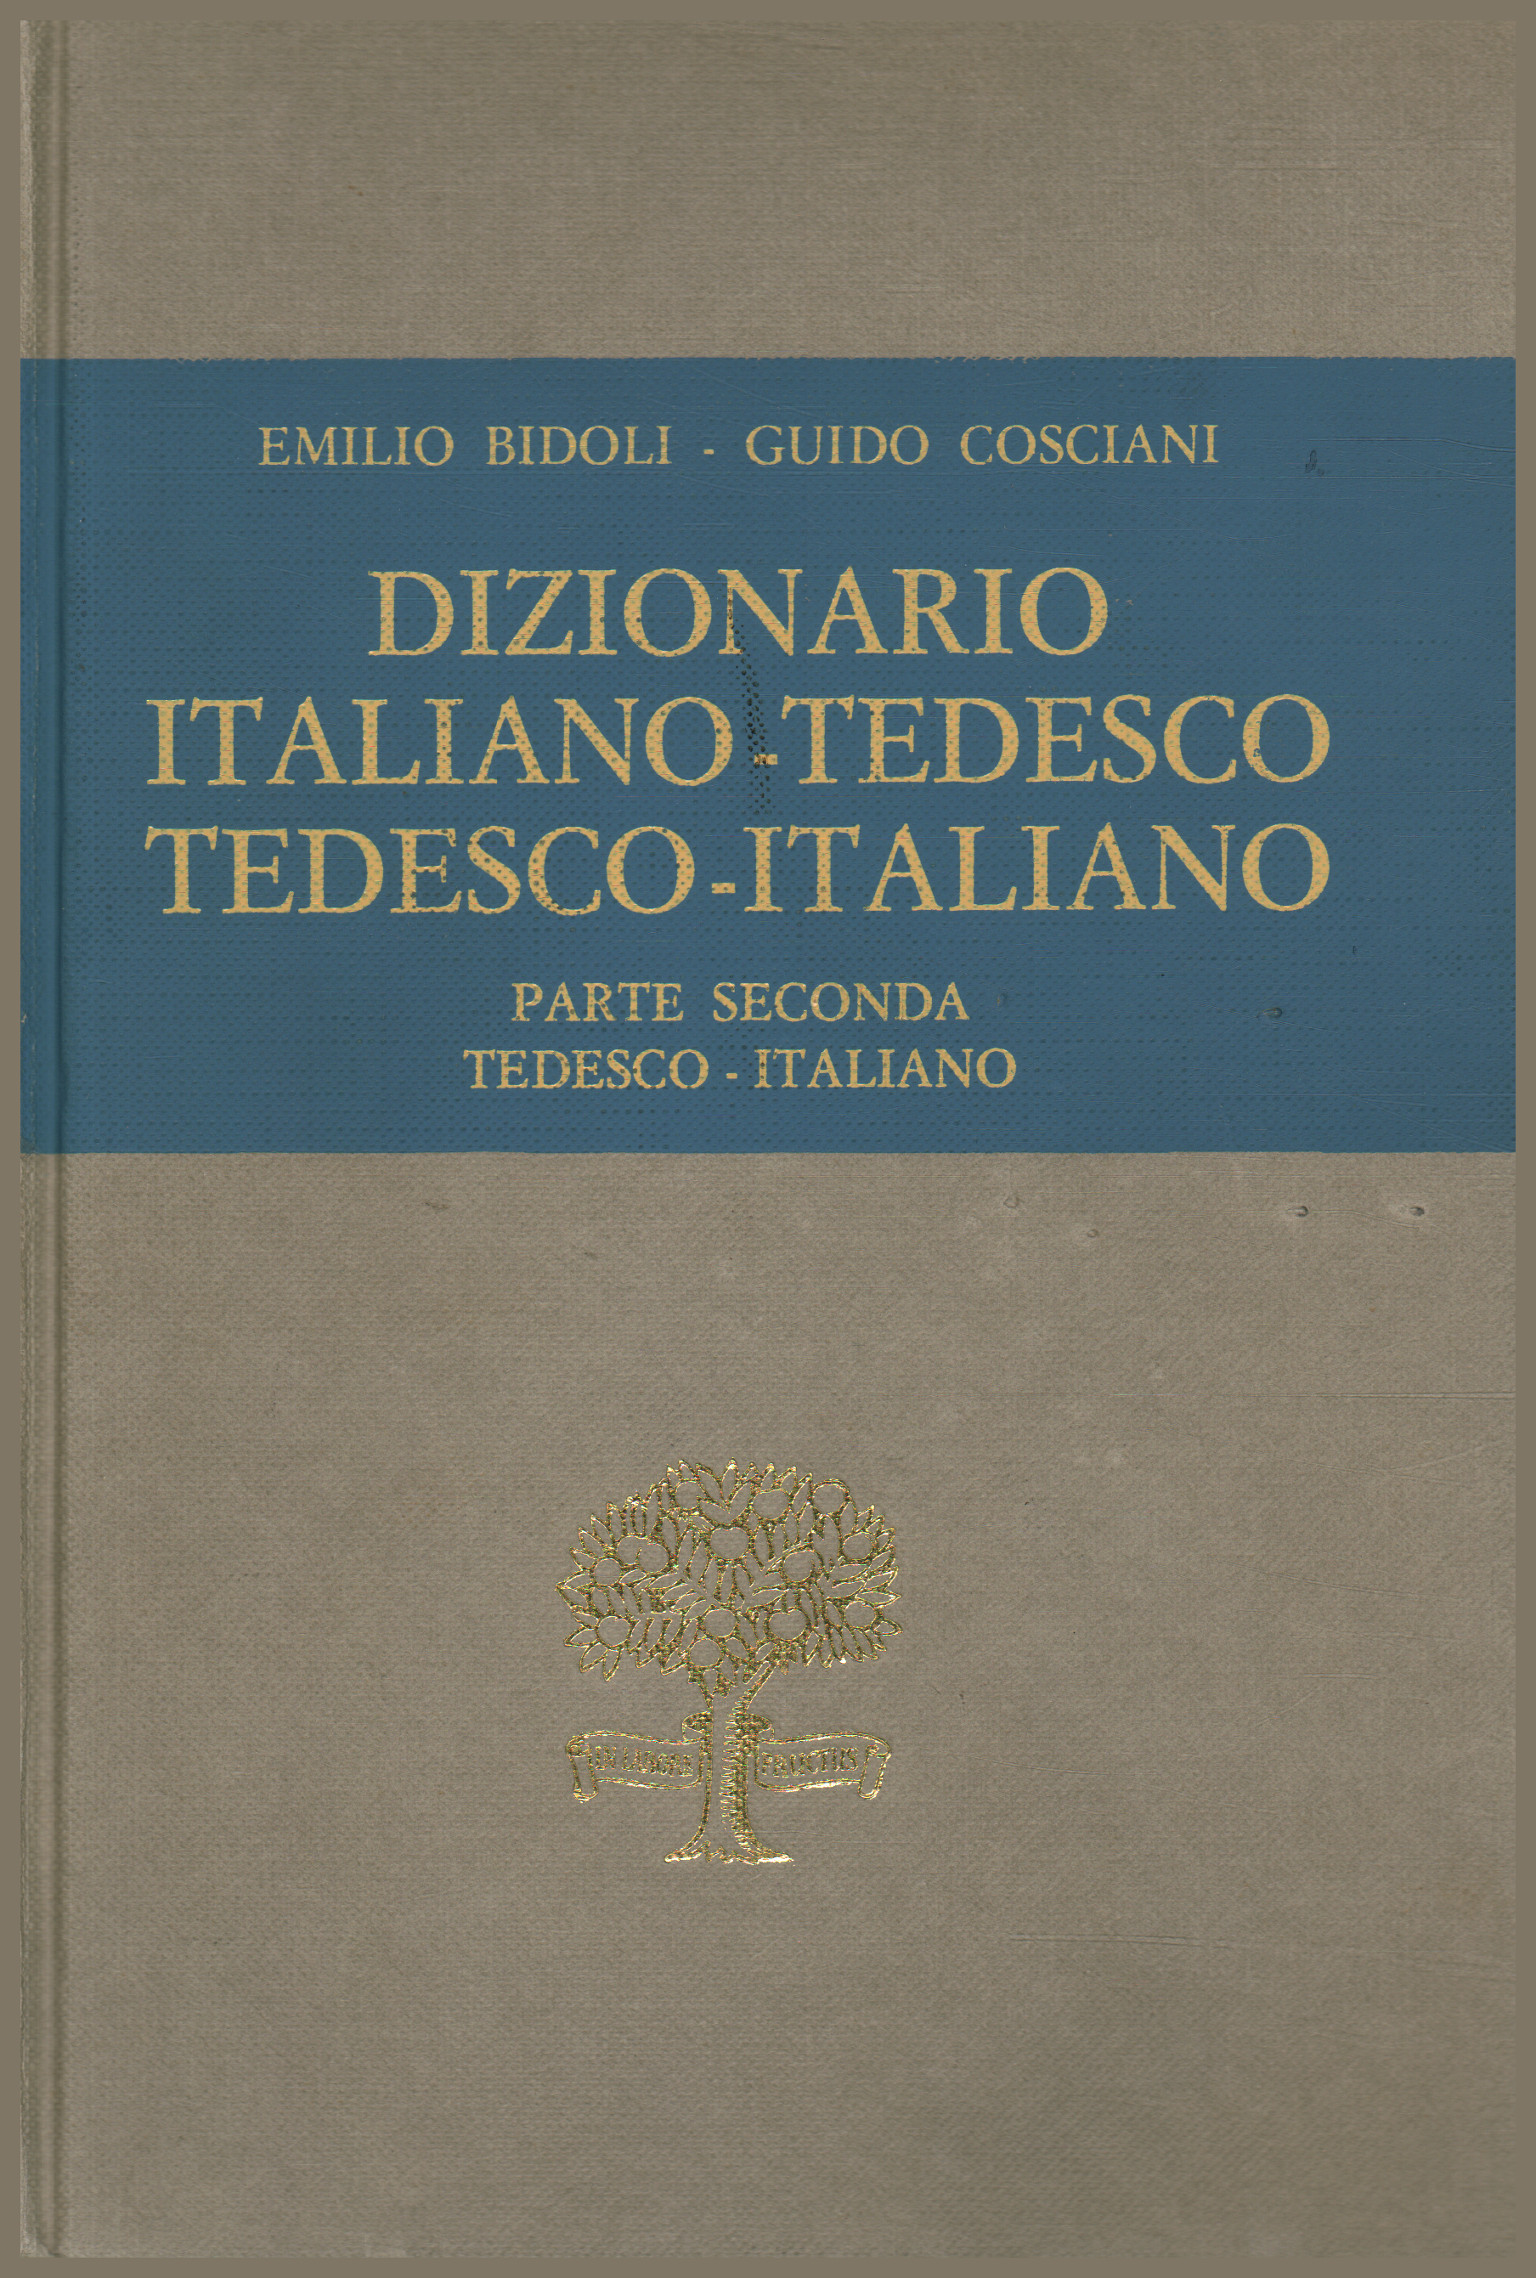 Dizionario italiano-tedesco tedesco-italiano. Part, Emilio Bidoli Guido Cosciani